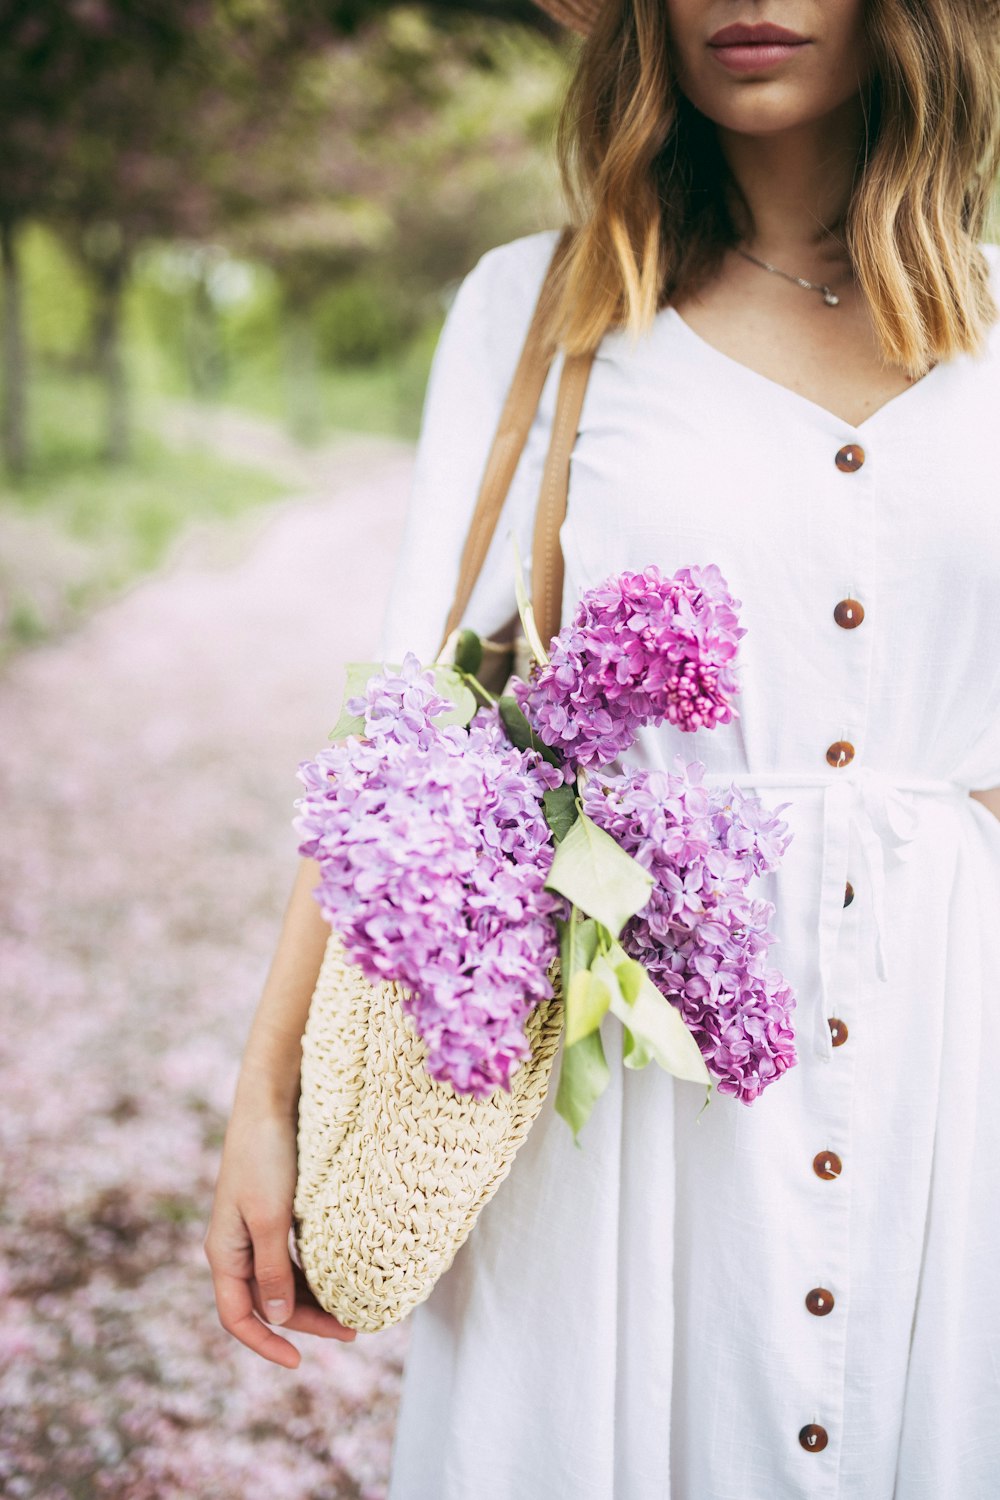 sac de transport femme avec des fleurs